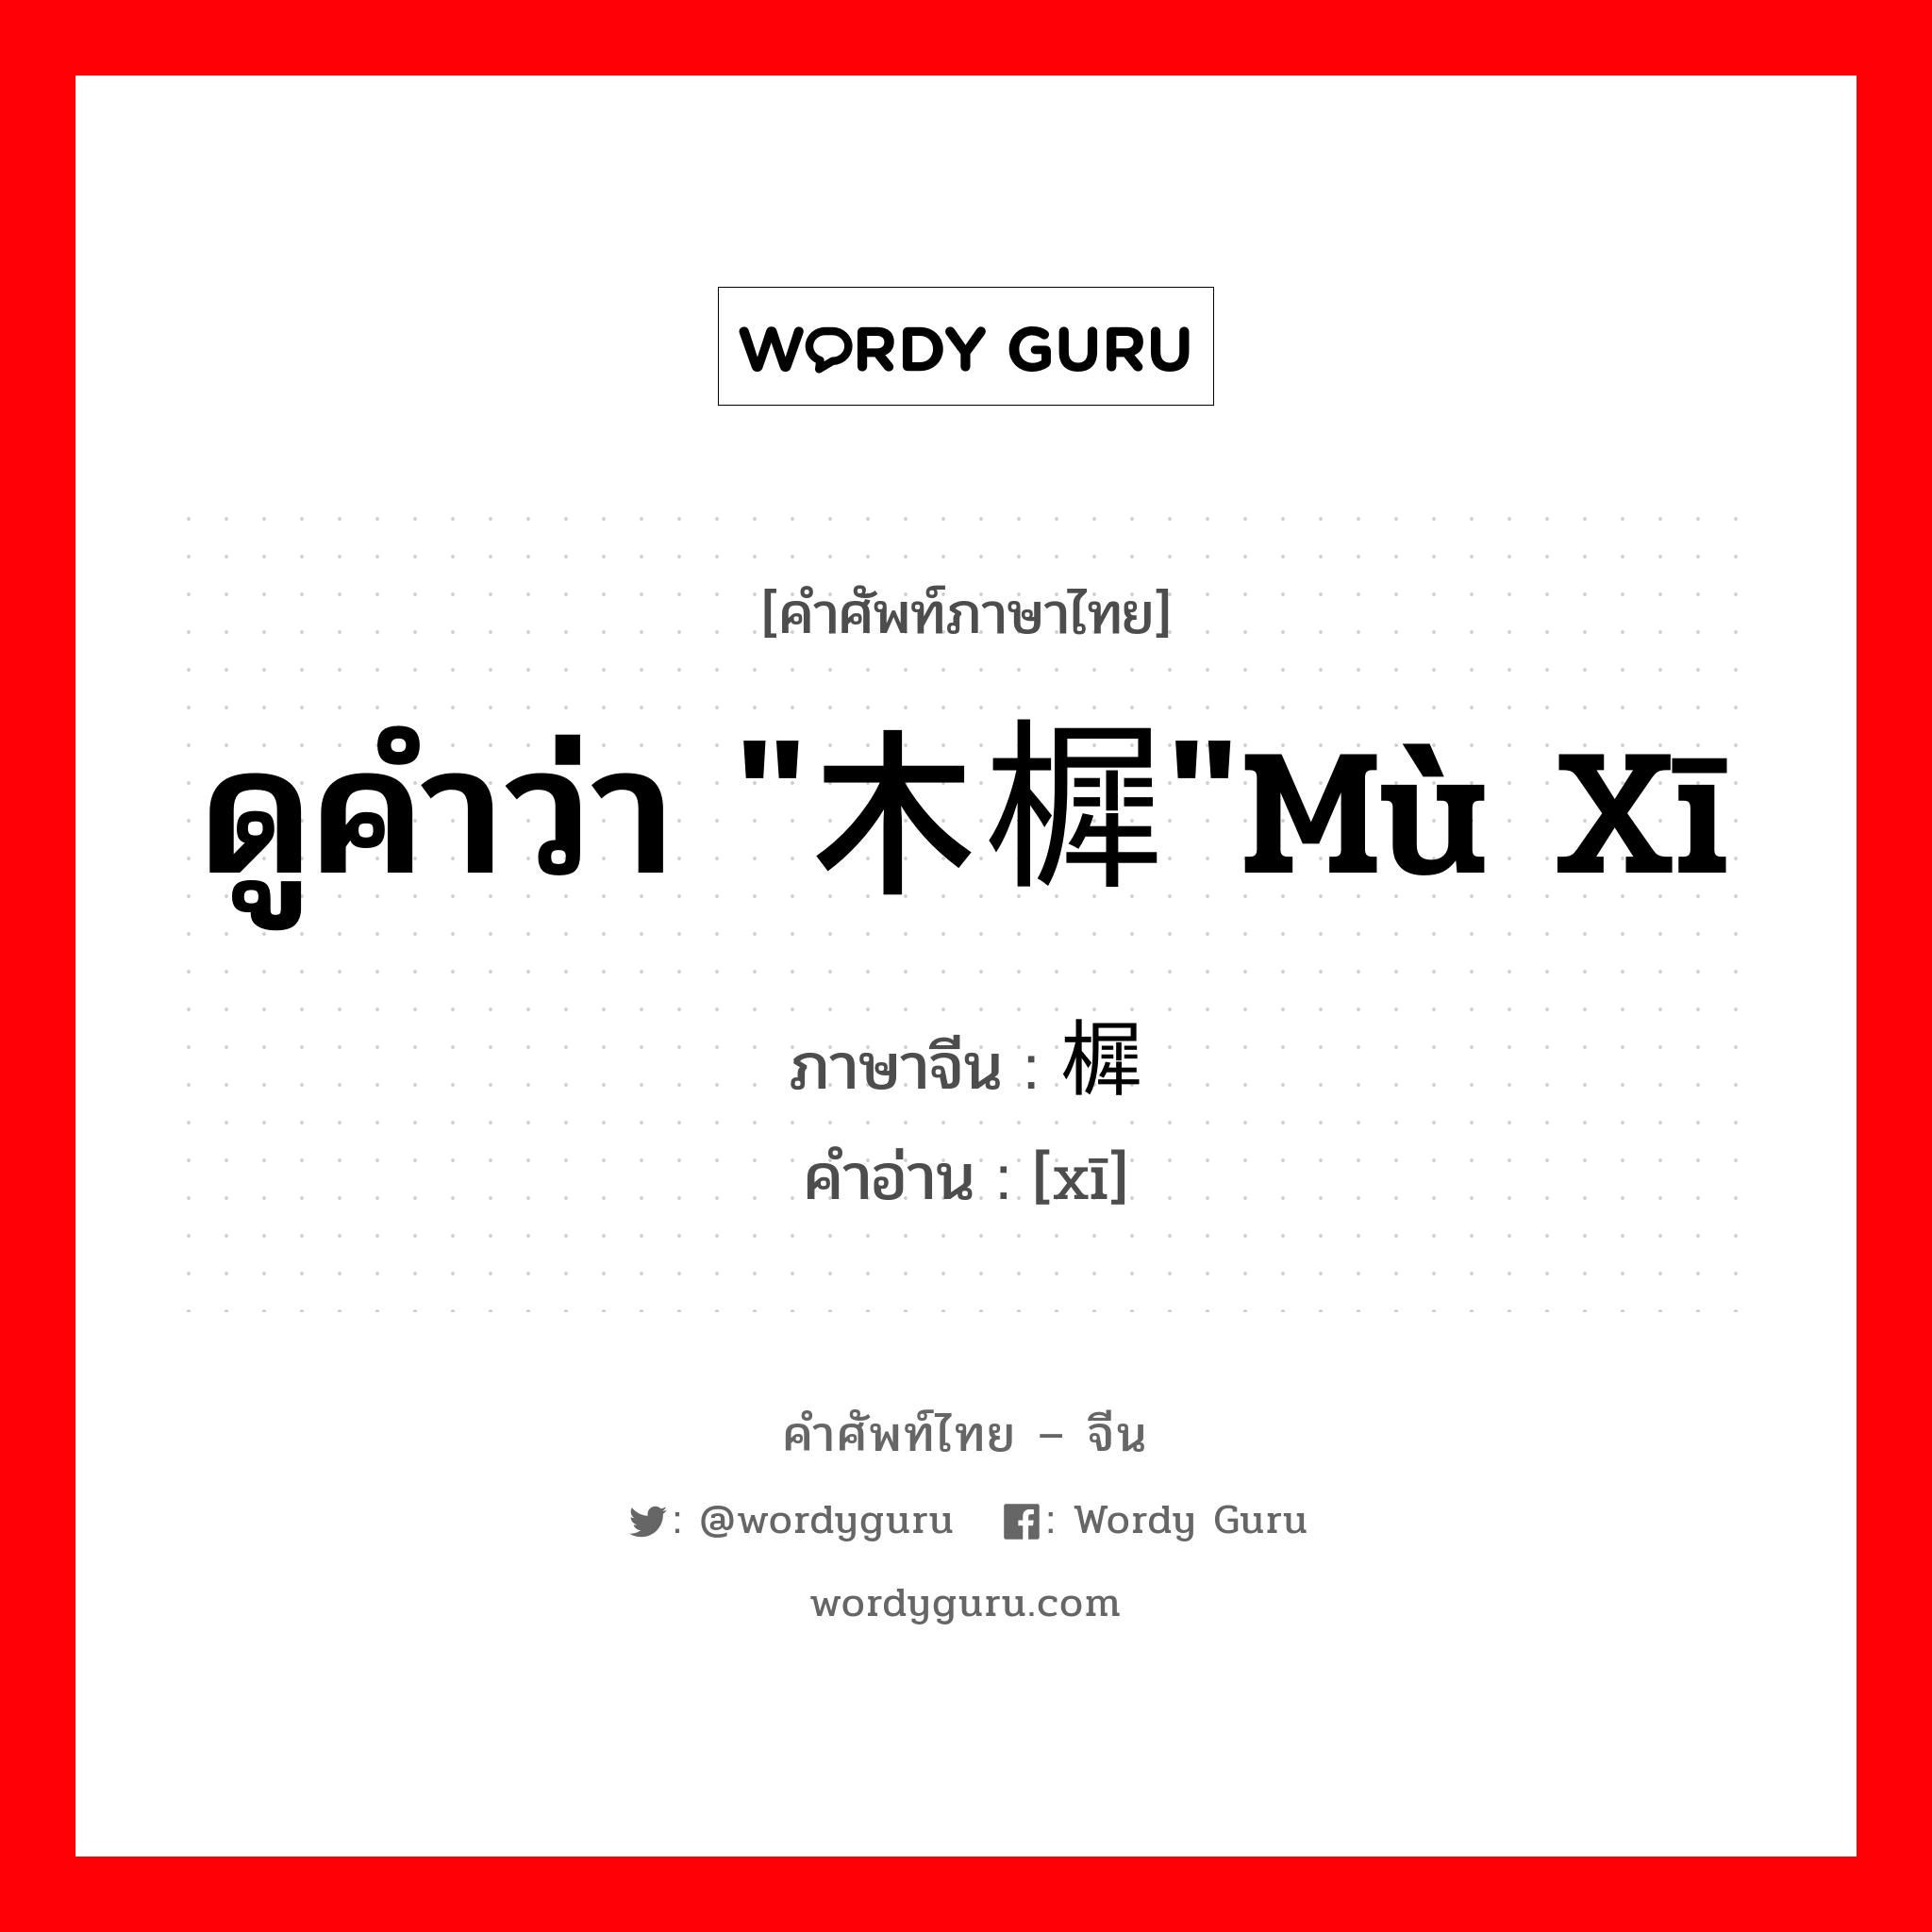 ดูคำว่า "木樨"mù xī ภาษาจีนคืออะไร, คำศัพท์ภาษาไทย - จีน ดูคำว่า "木樨"mù xī ภาษาจีน 樨 คำอ่าน [xī]